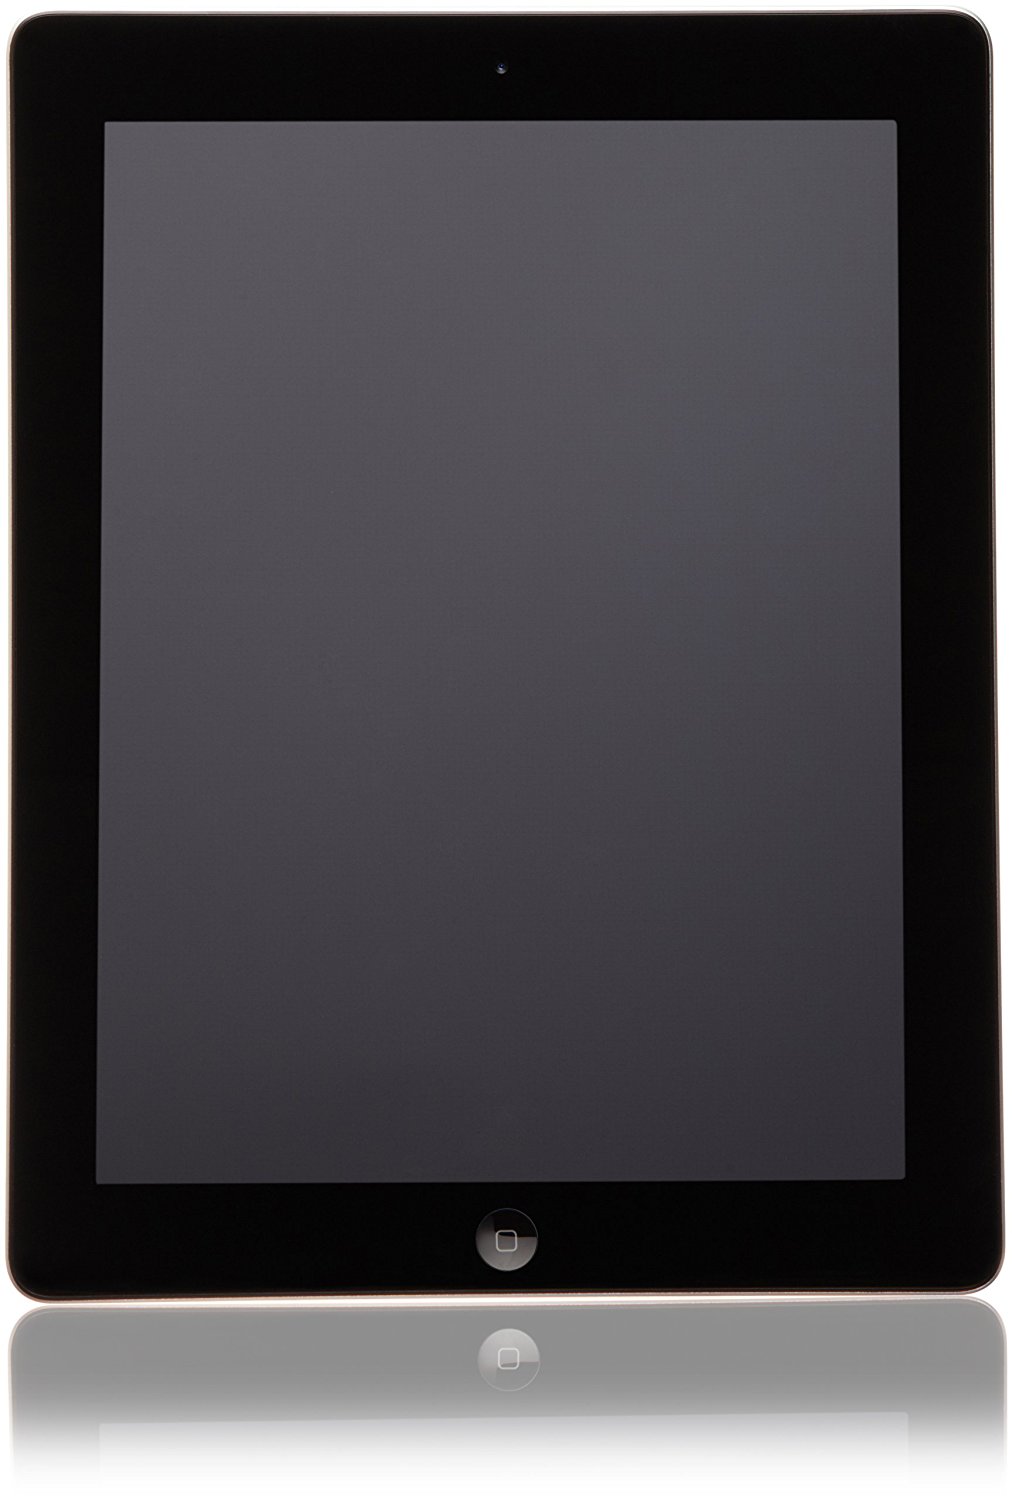 Ipad 4 bị đen màn hình là dấu hiệu nhận biết màn hình ipad bị lỗi